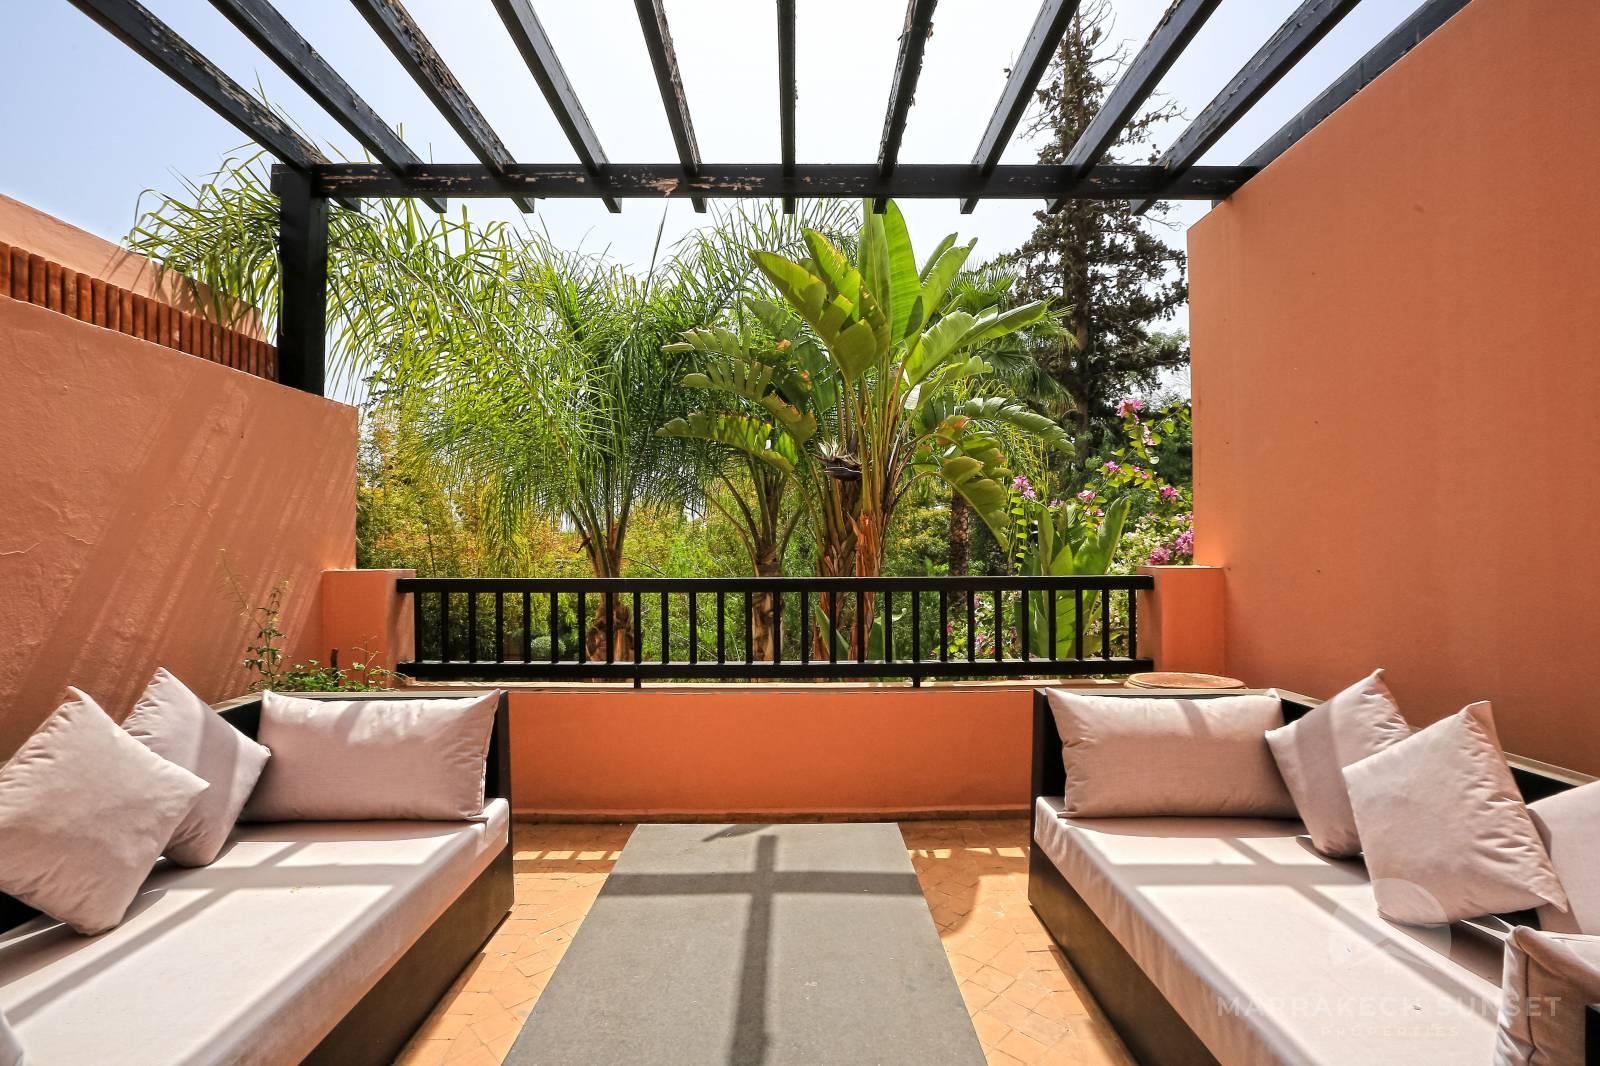 Élégant Riad style villa de 03 Chambres à vendre dans le complexe résidentiel de luxe The Four Seasons Marrakech.